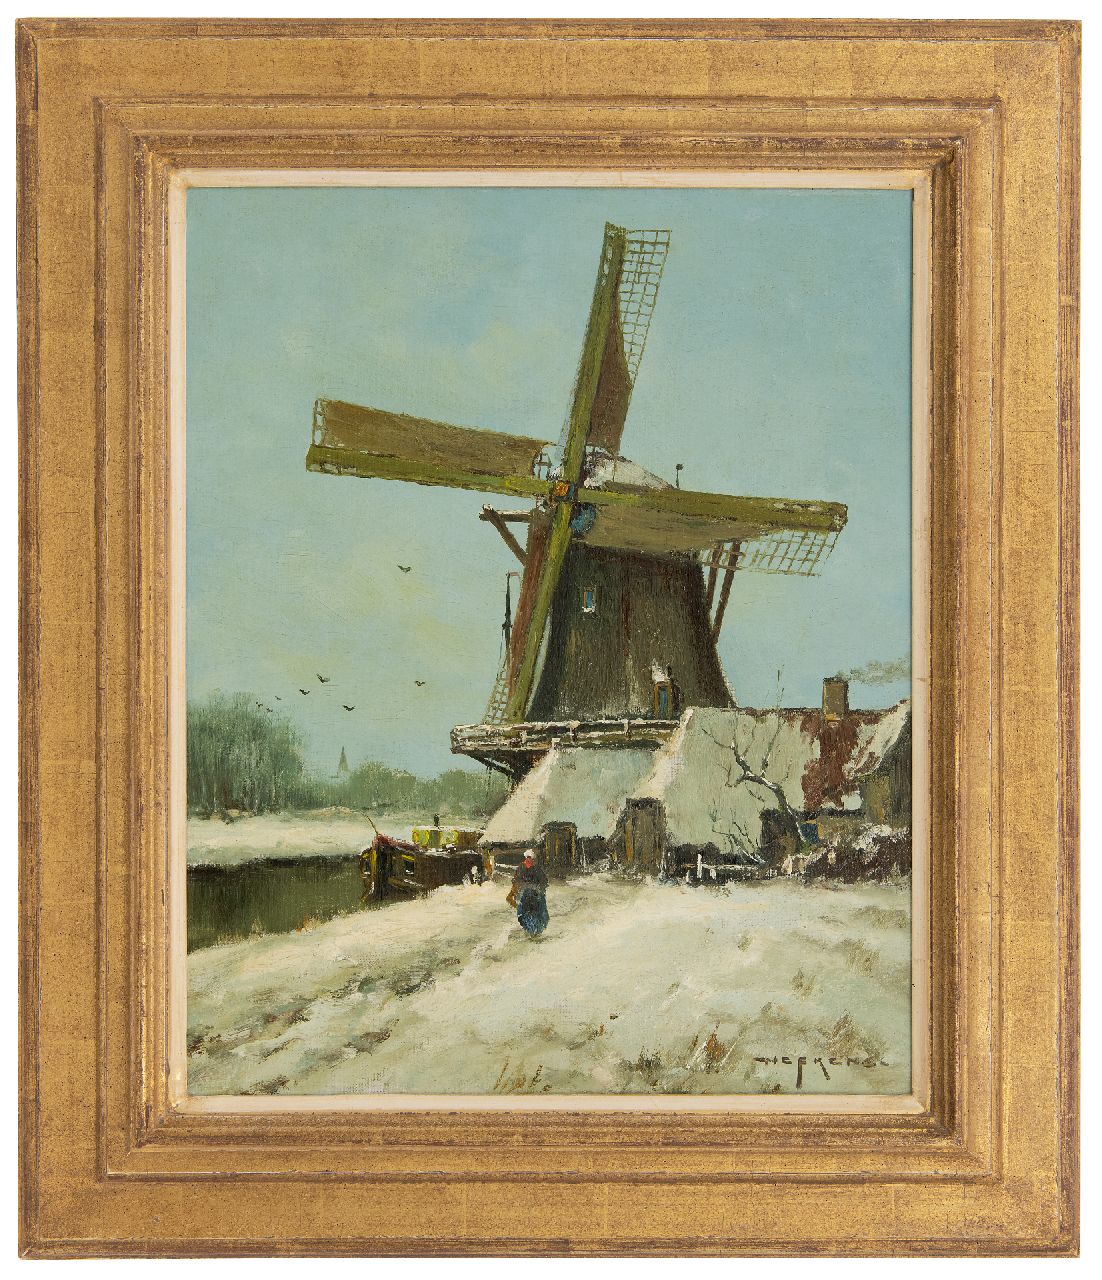 Nefkens M.J.  | Martinus Jacobus Nefkens | Schilderijen te koop aangeboden | Molen in een sneeuwlandschap, olieverf op doek 50,3 x 40,3 cm, gesigneerd rechtsonder